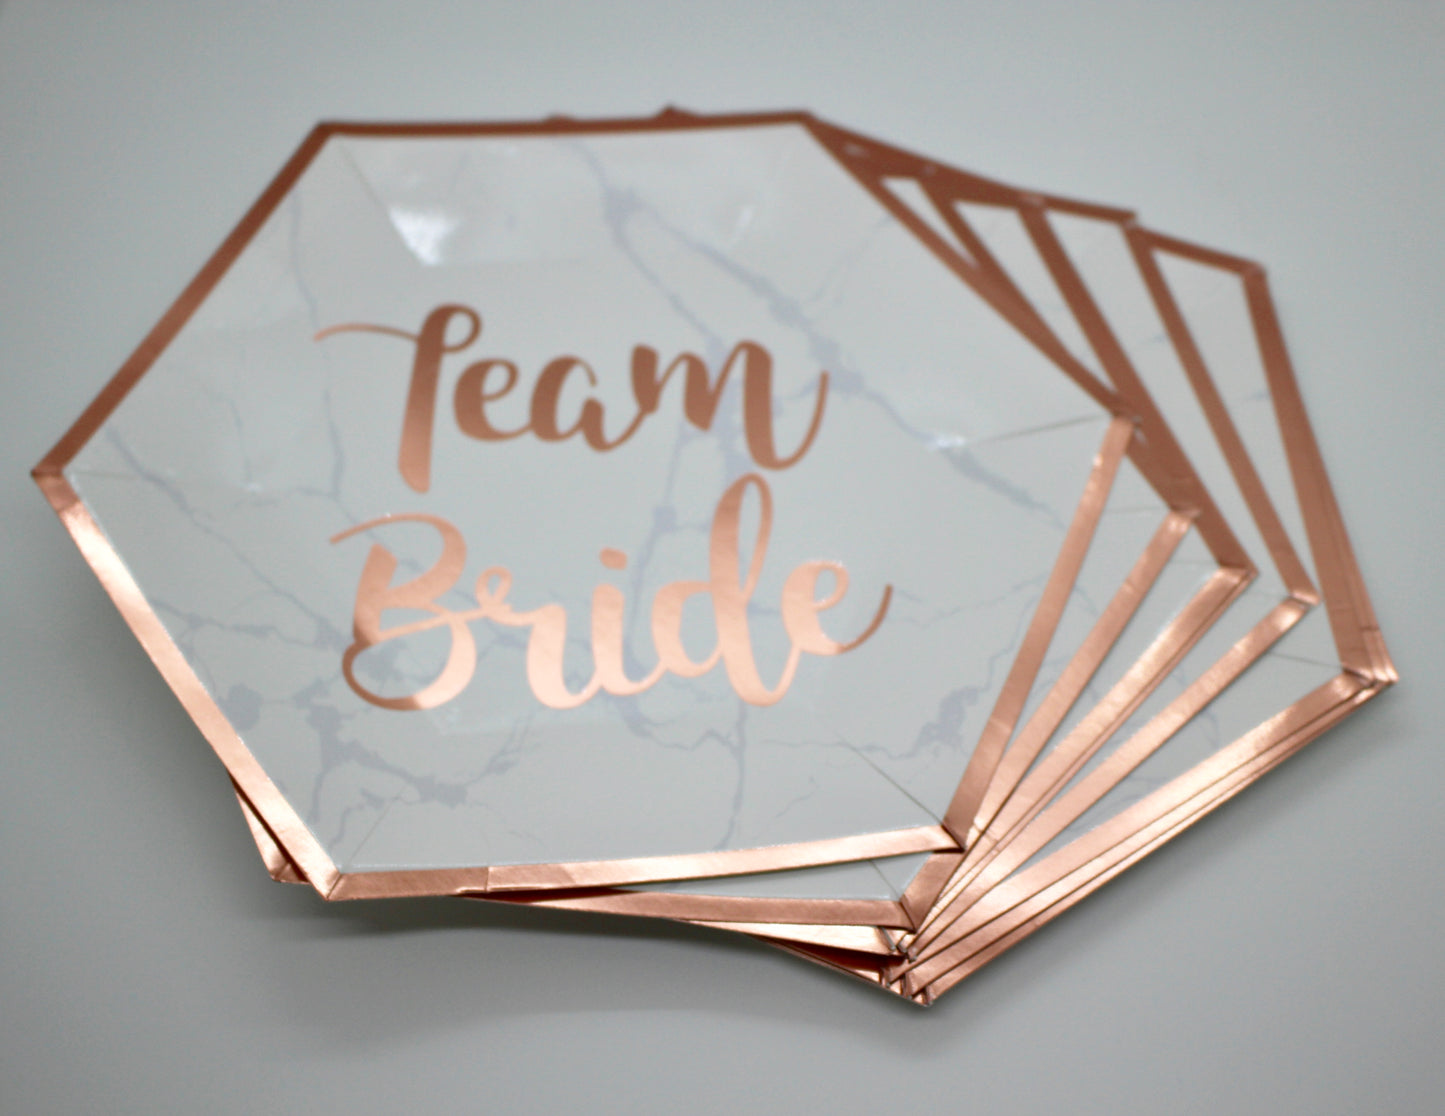 Team Bride Floral Paper Plate Set - Set of 8